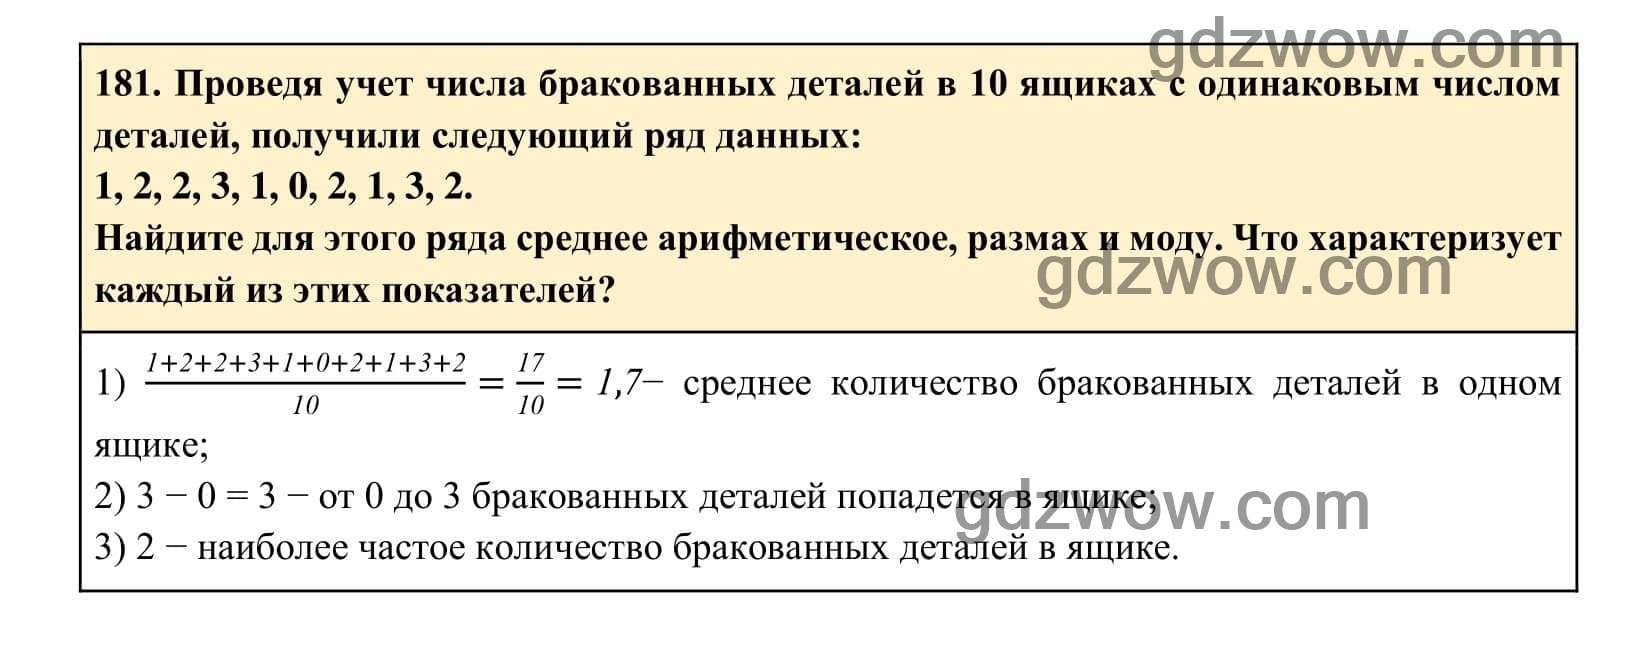 Упражнение 181 - ГДЗ по Алгебре 7 класс Учебник Макарычев (решебник) - GDZwow